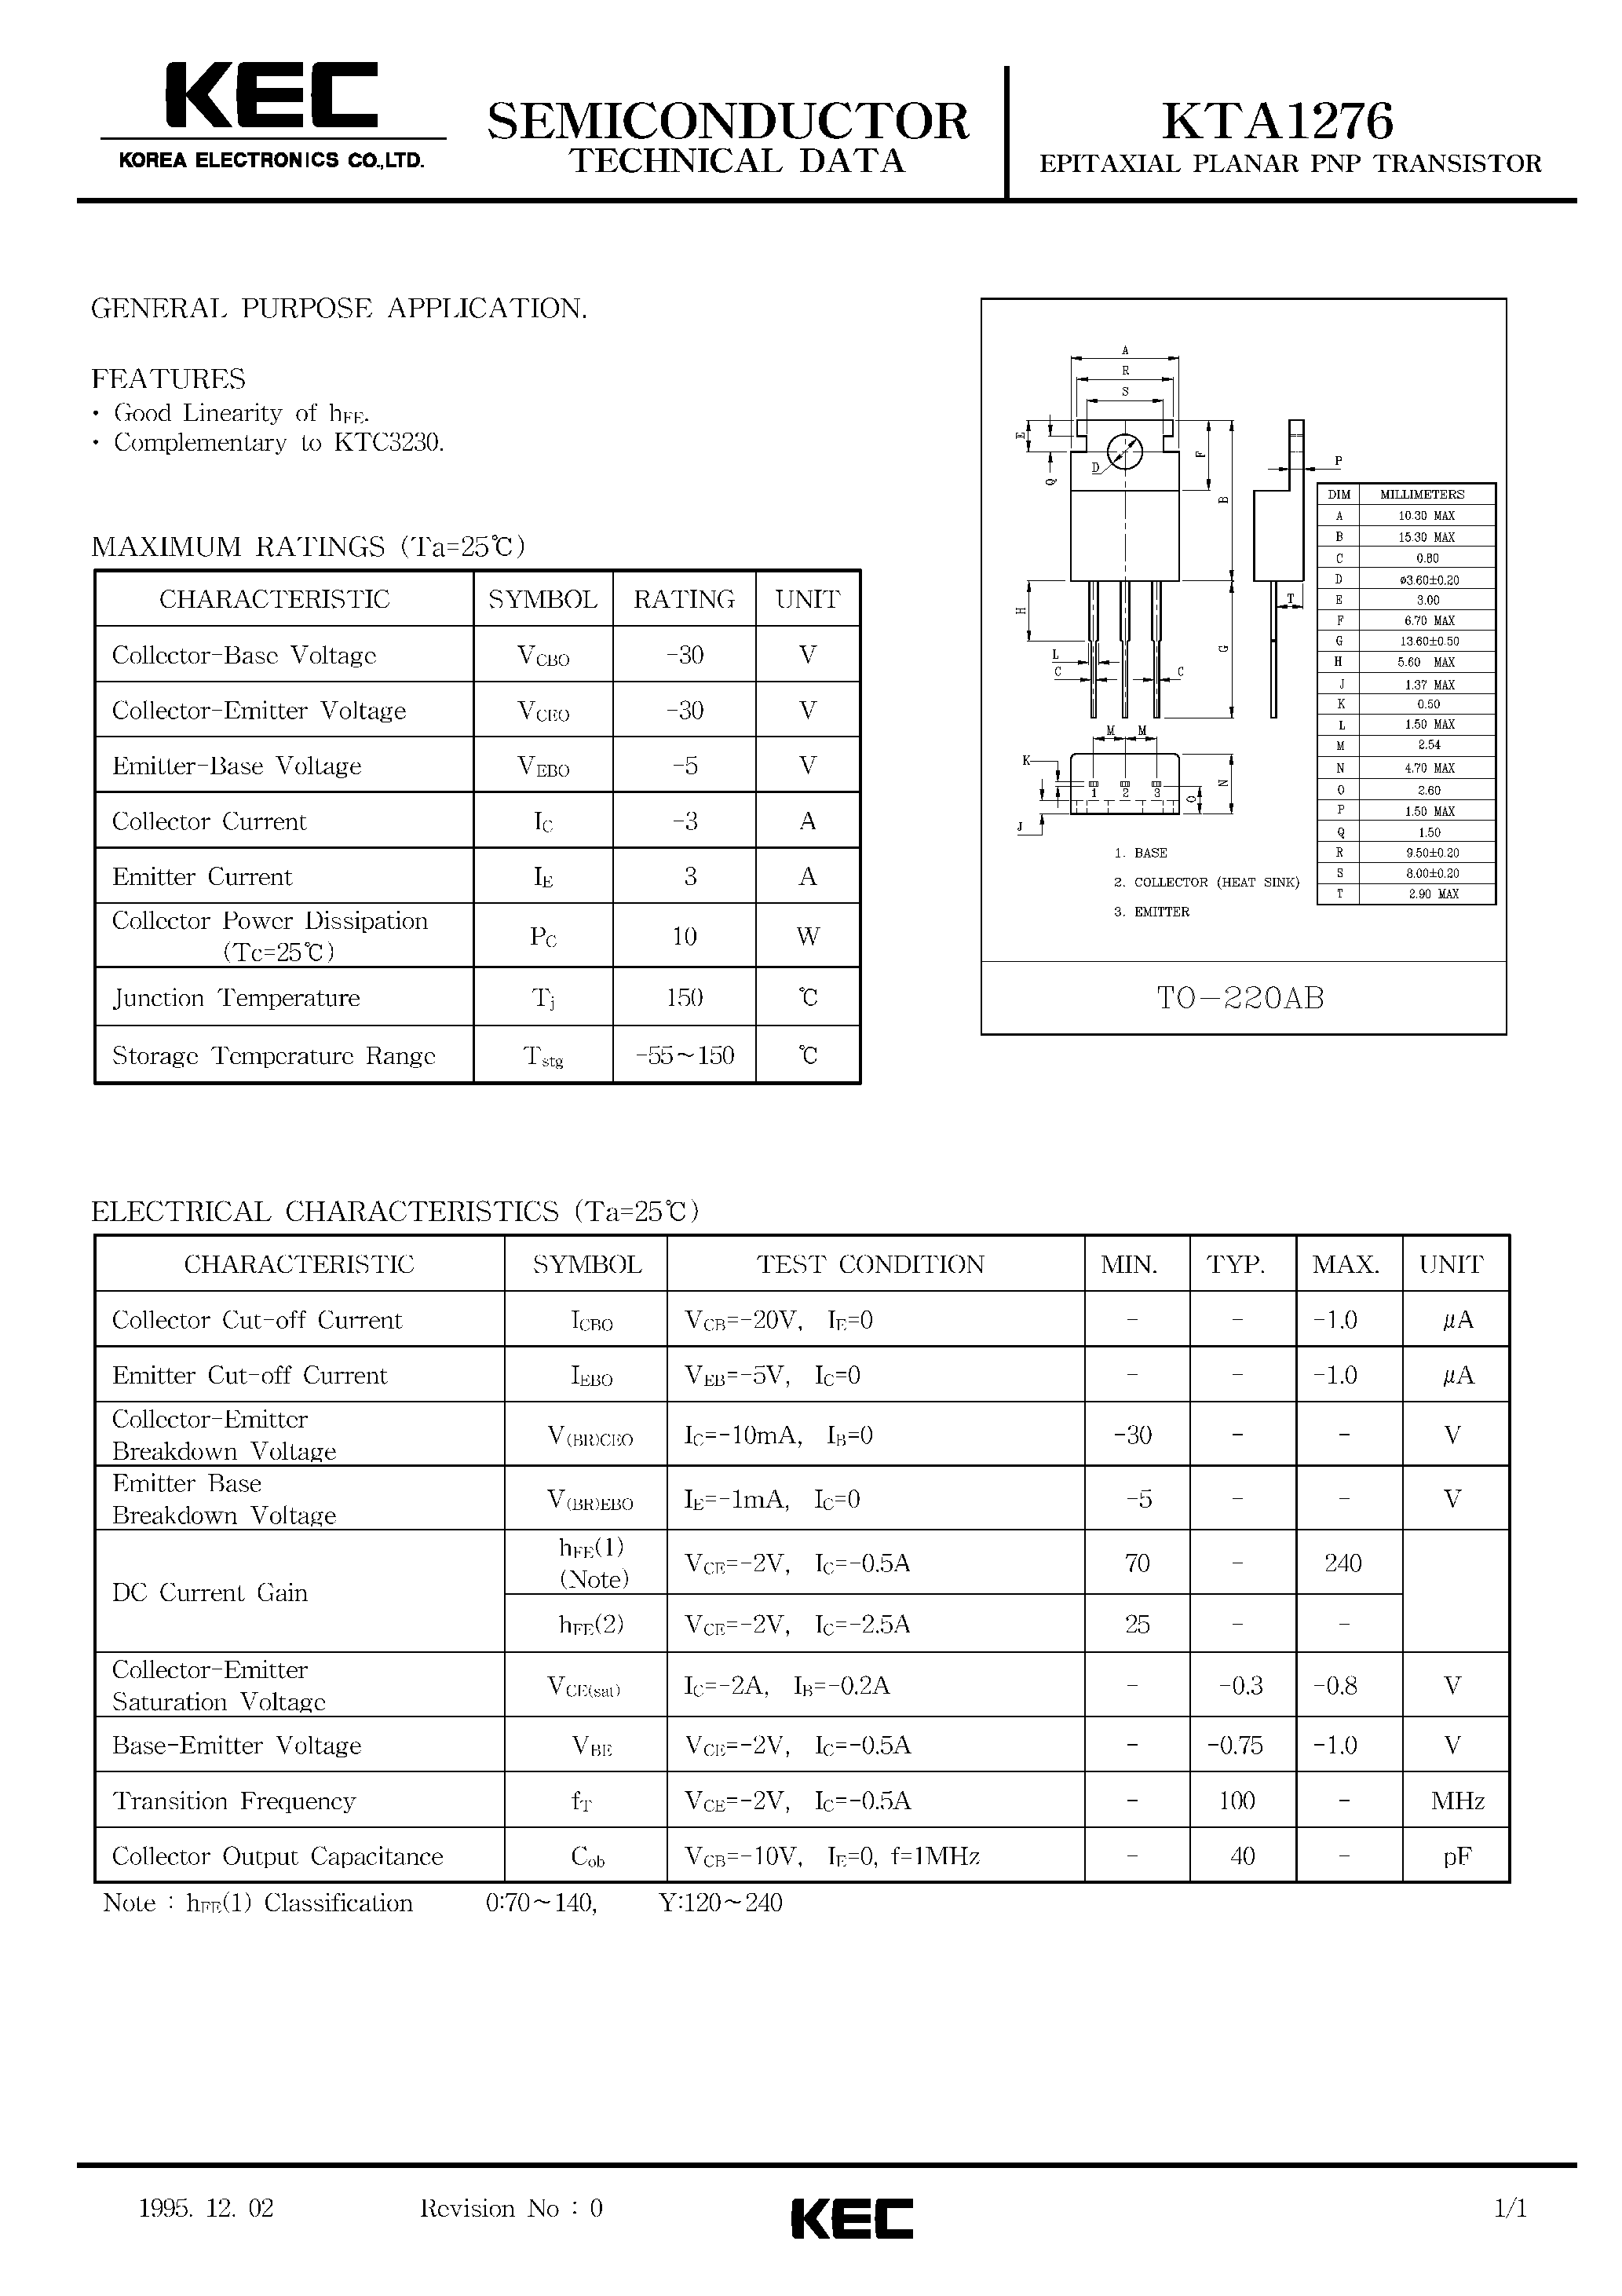 Datasheet KTA1276 - EPITAXIAL PLANAR PNP TRANSISTOR (GENERAL PURPOSE) page 1